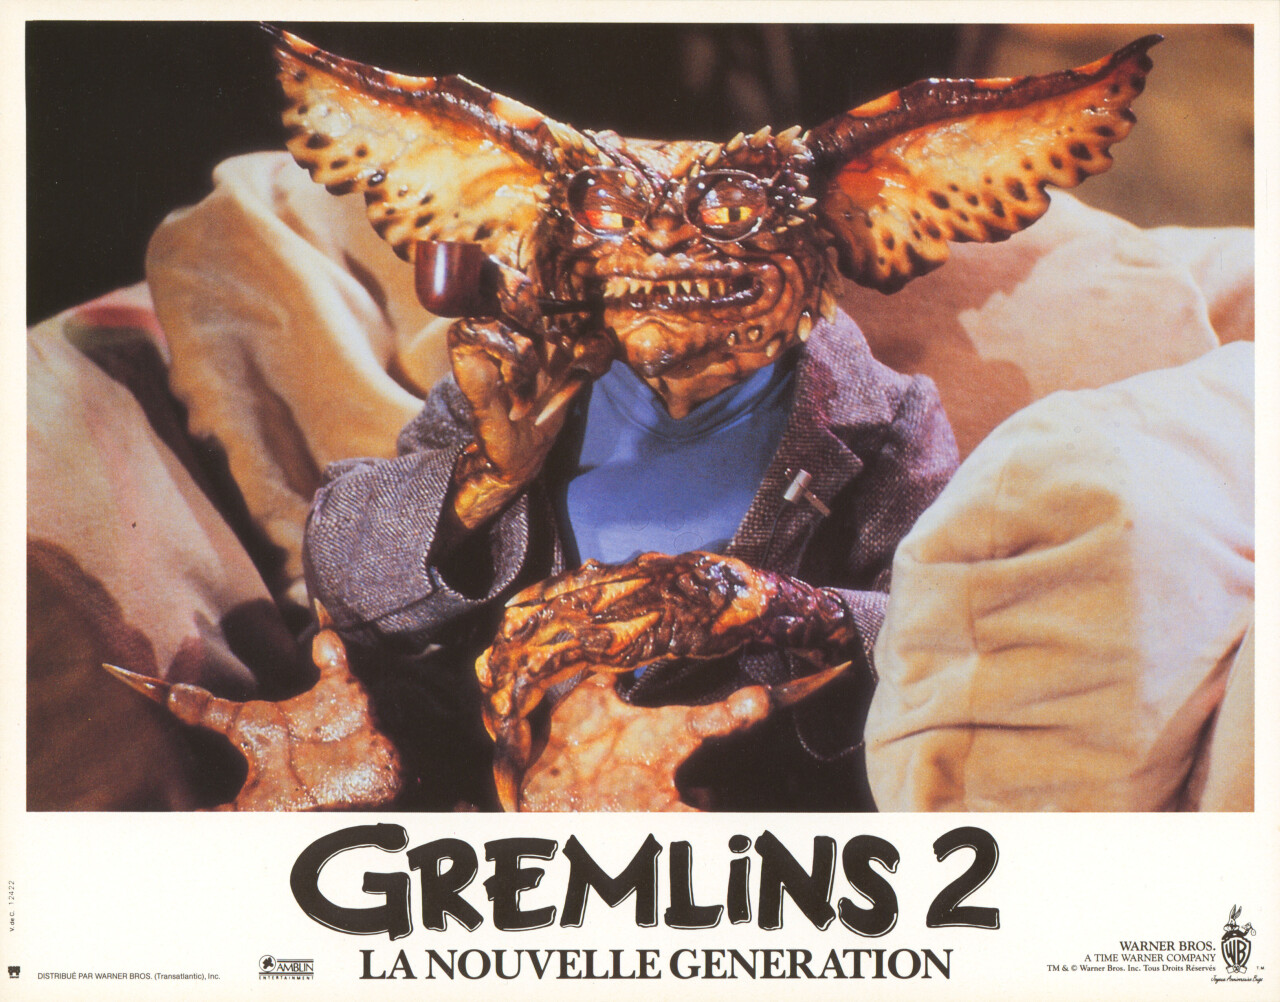 Гремлины 2 Новая партия (Gremlins 2 The New Batch, 1990), режиссёр Джо Данте, французский постер к фильму (ужасы, 1990 год)_10